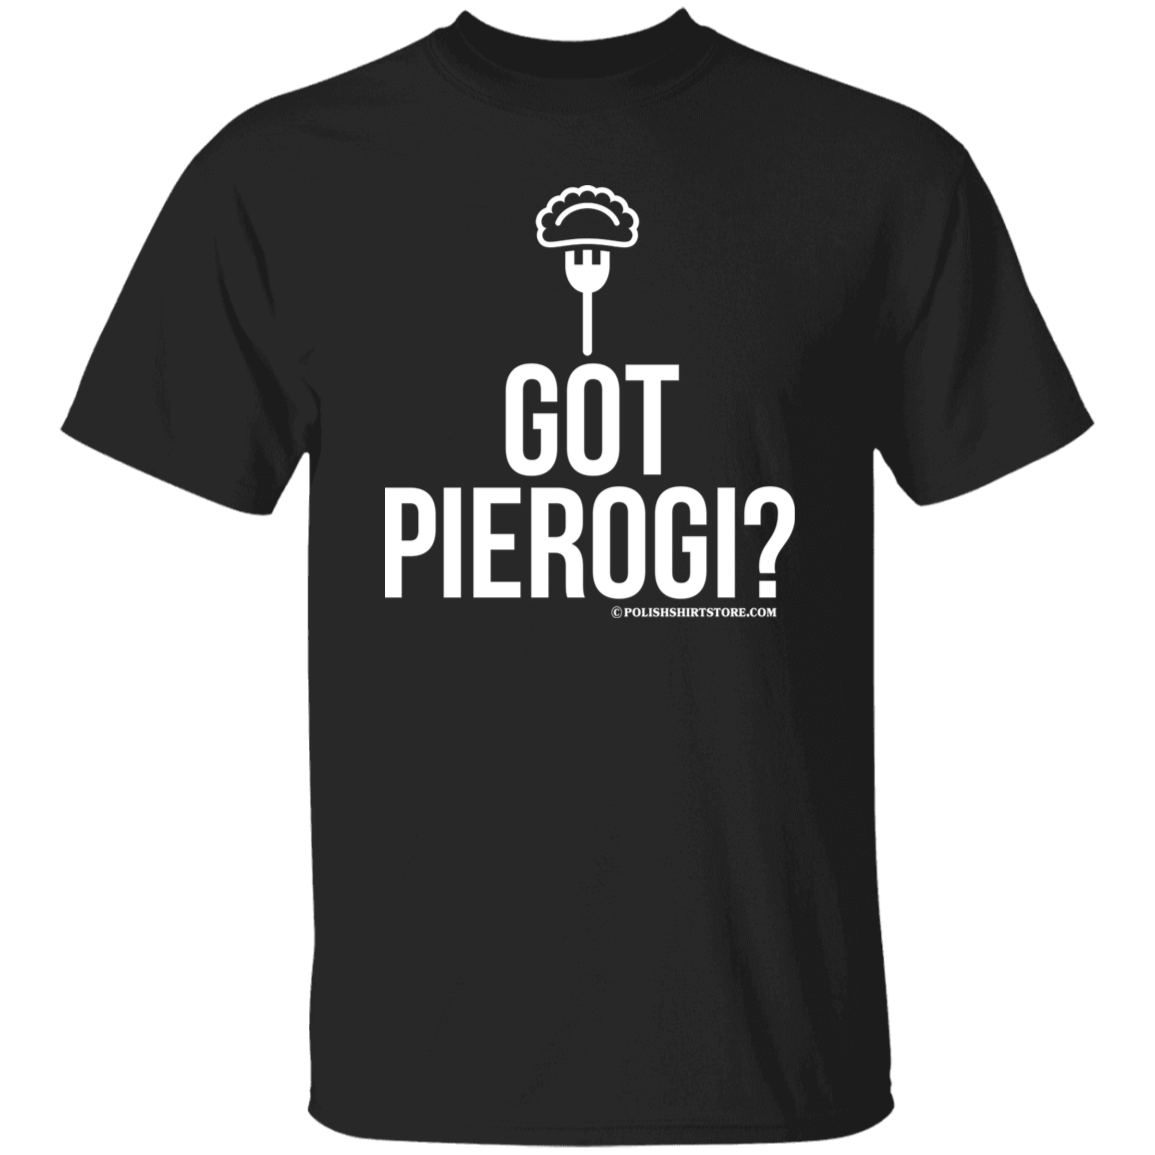 Got Pierogi Apparel CustomCat G500 5.3 oz. T-Shirt Black S